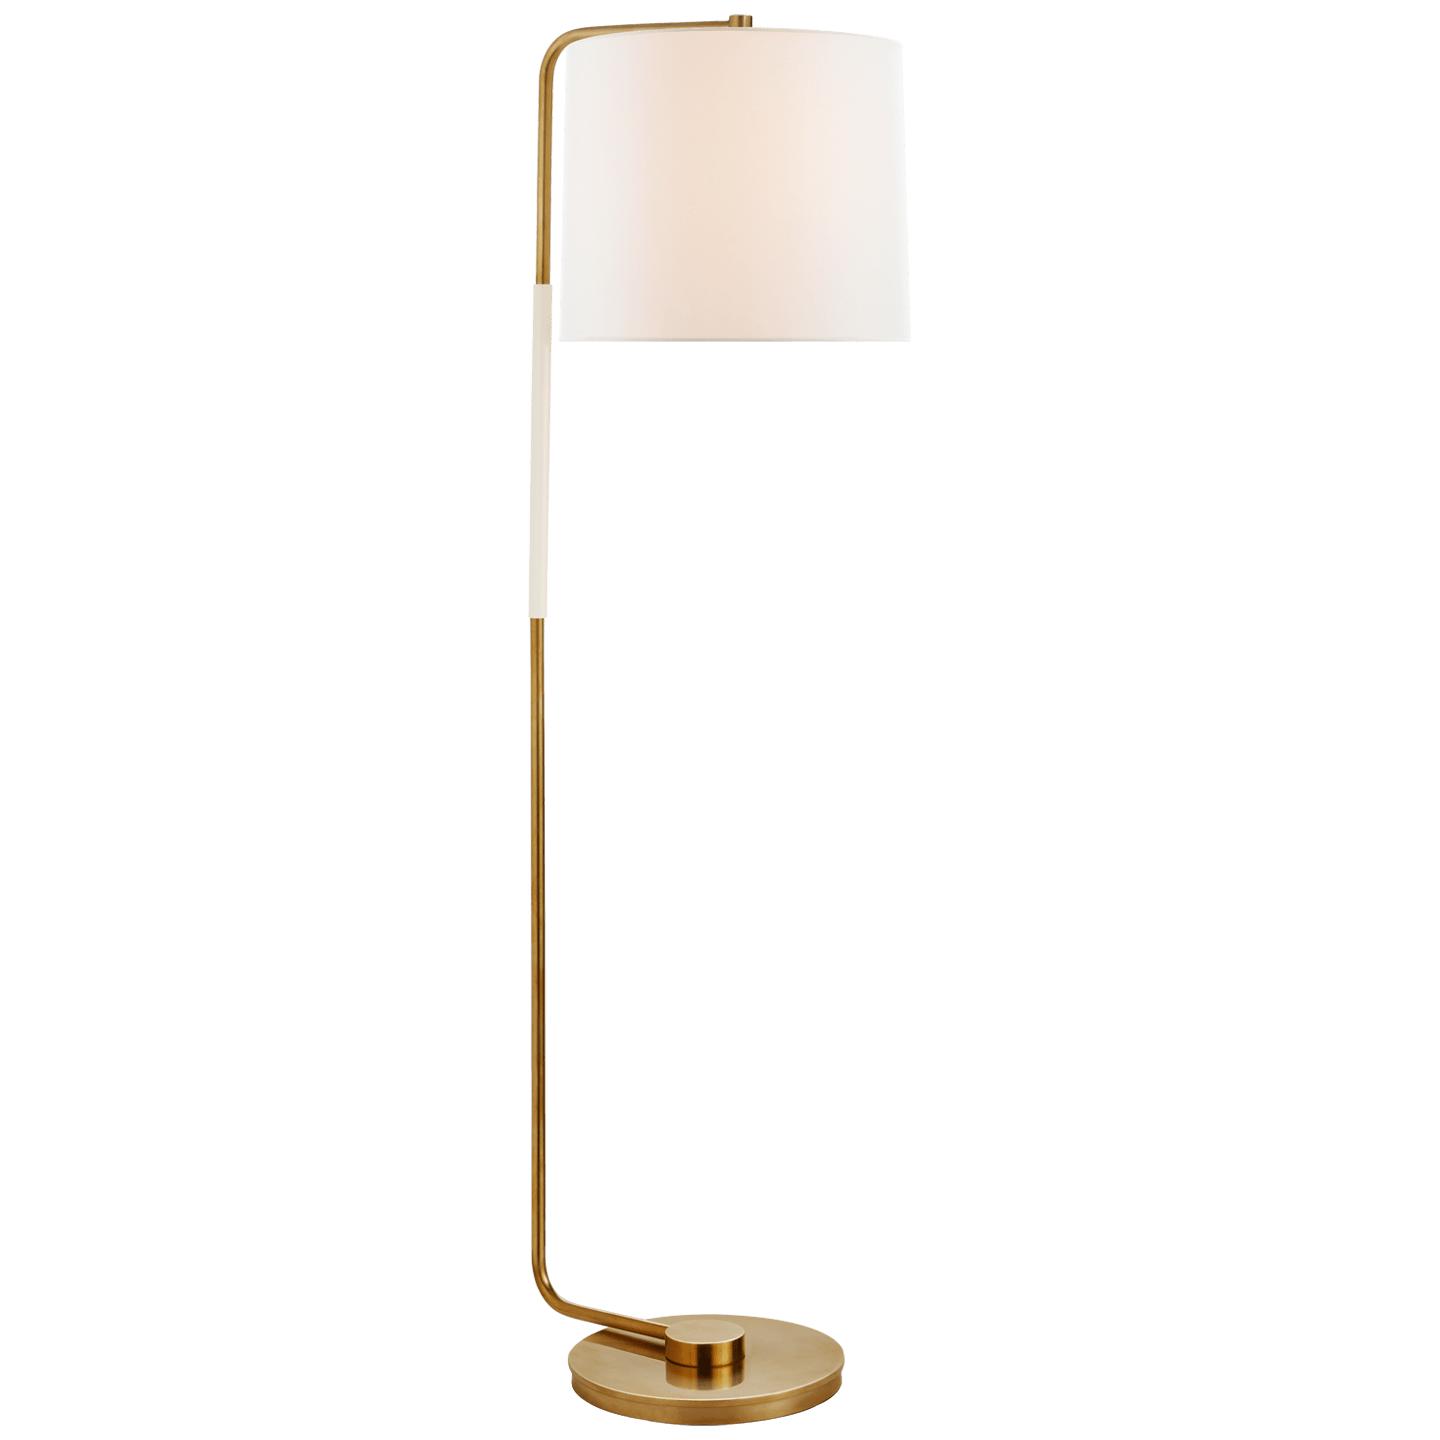 Купить Торшер Swing Articulating Floor Lamp в интернет-магазине roooms.ru